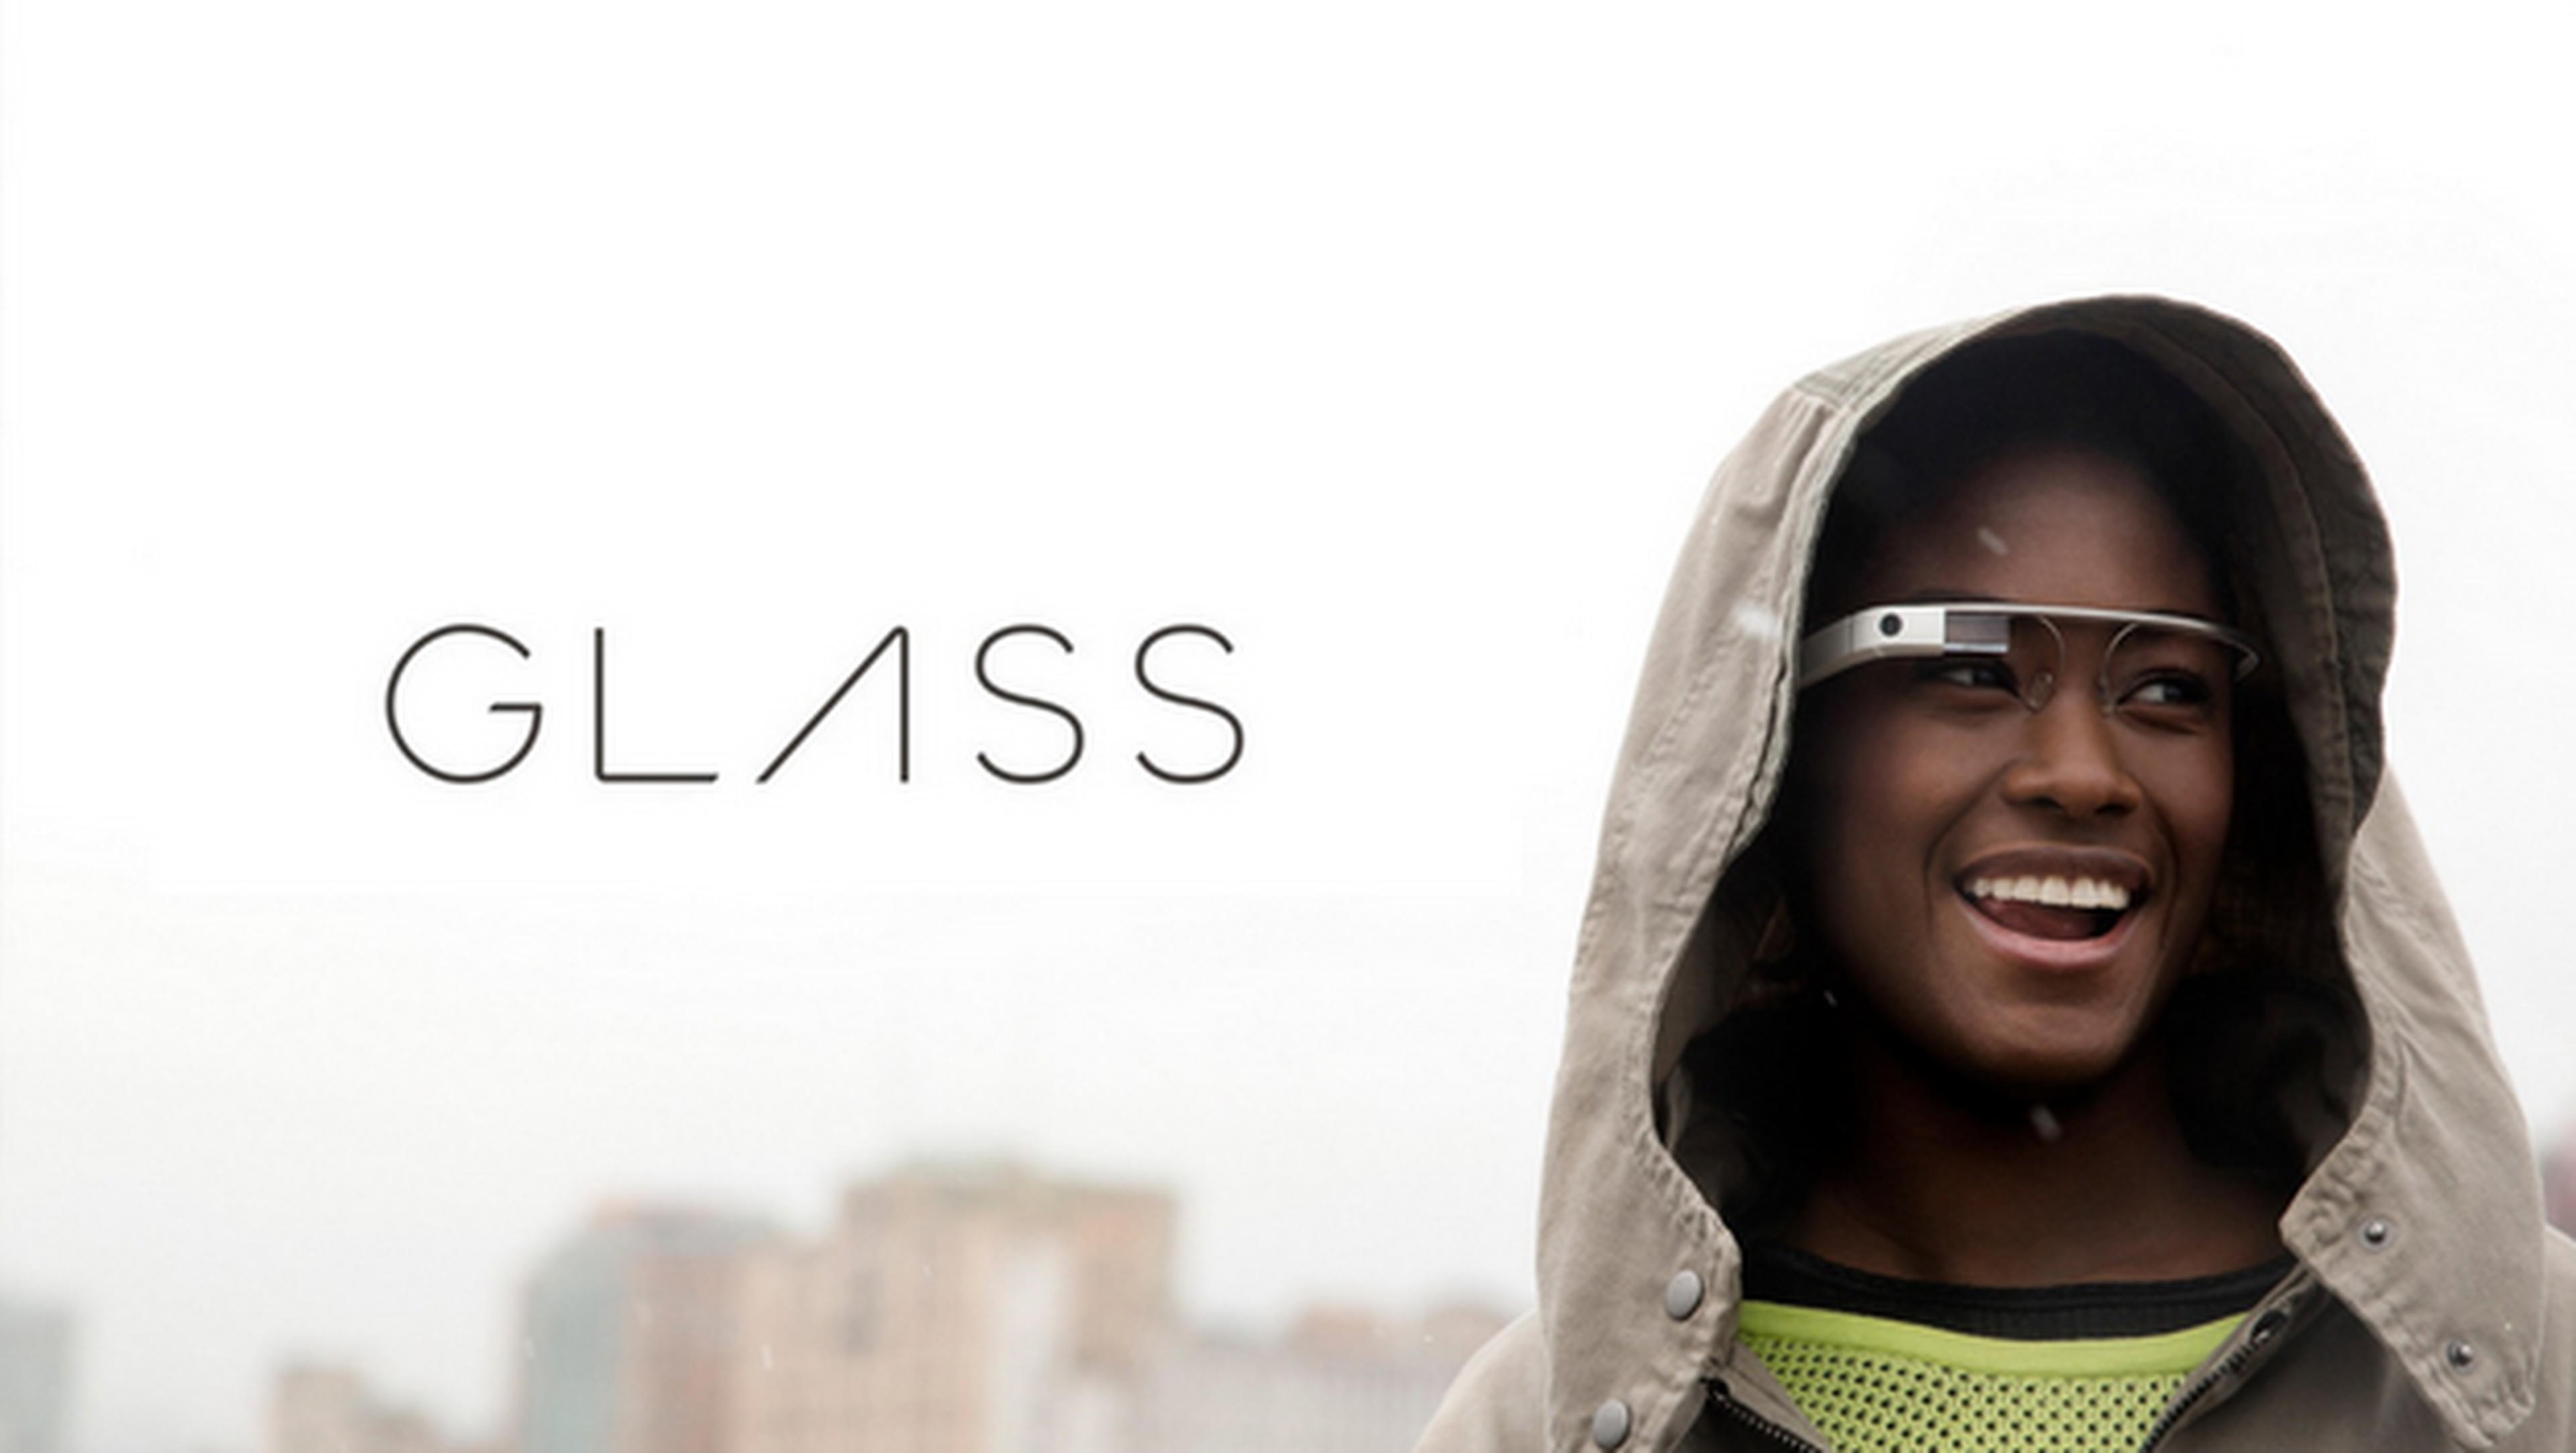 Google Glass, ya disponible para su compra sin invitación